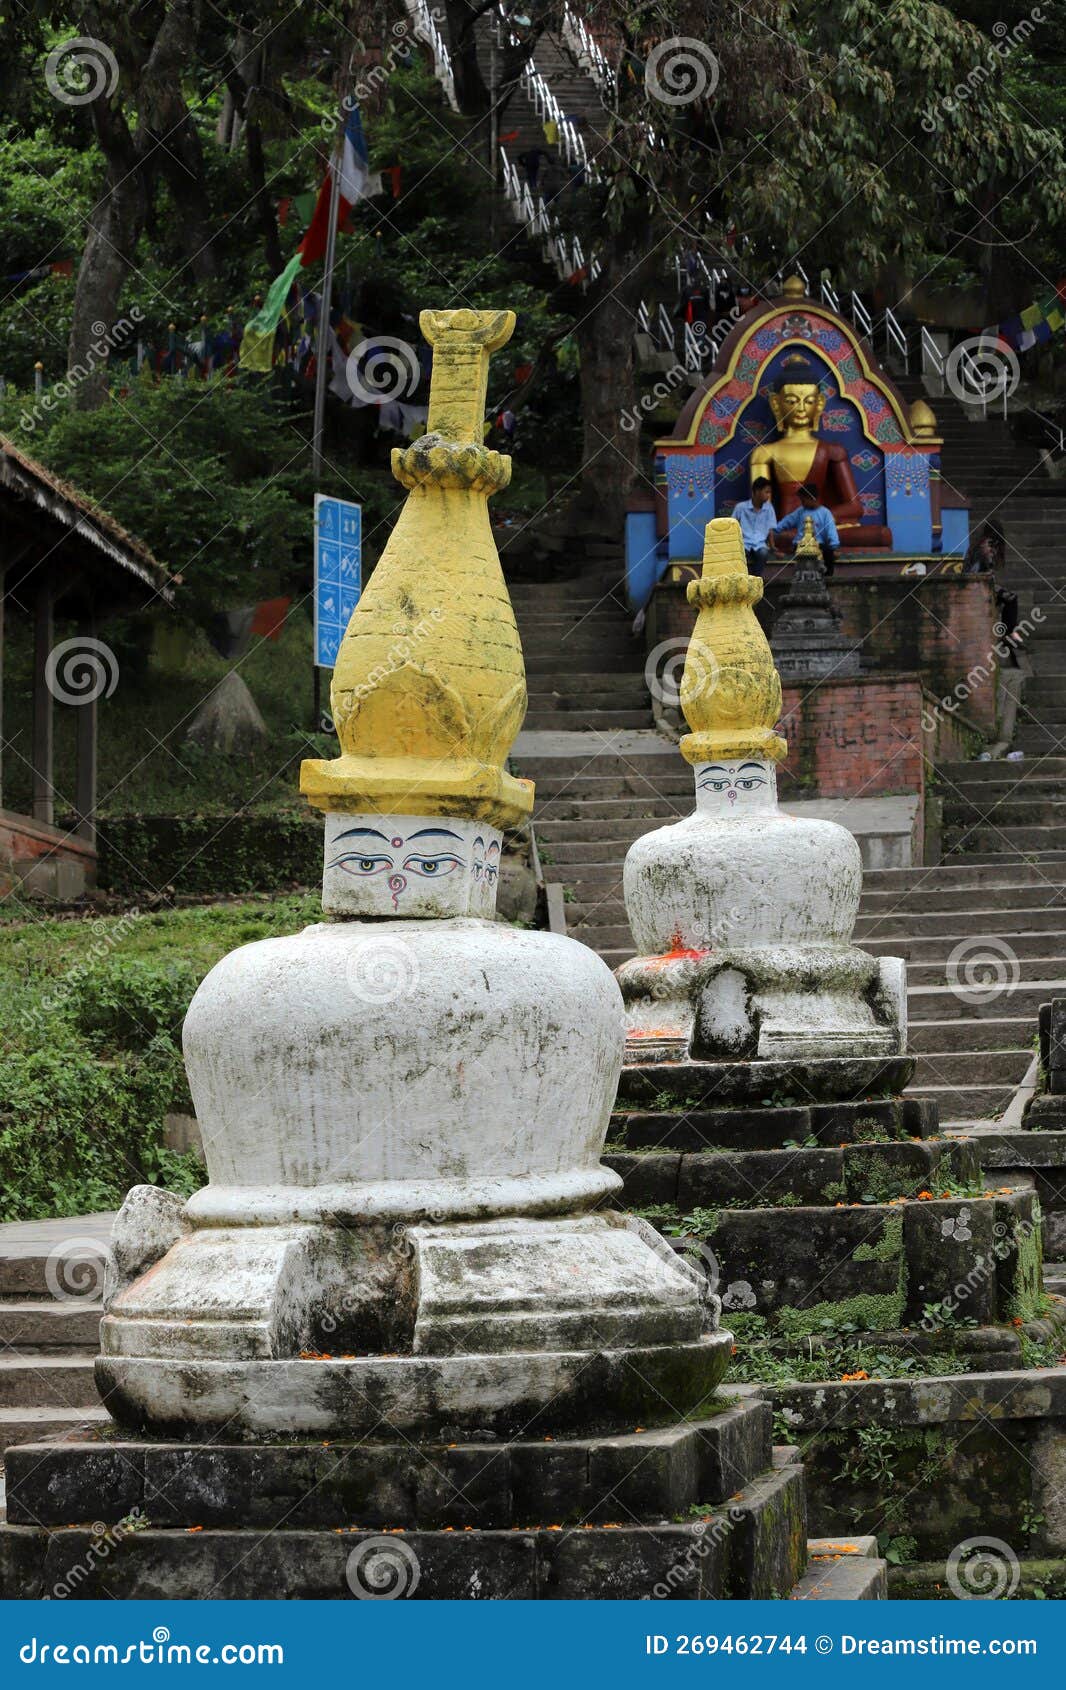 swayambhunath monkey temple - kathmandu, nepal